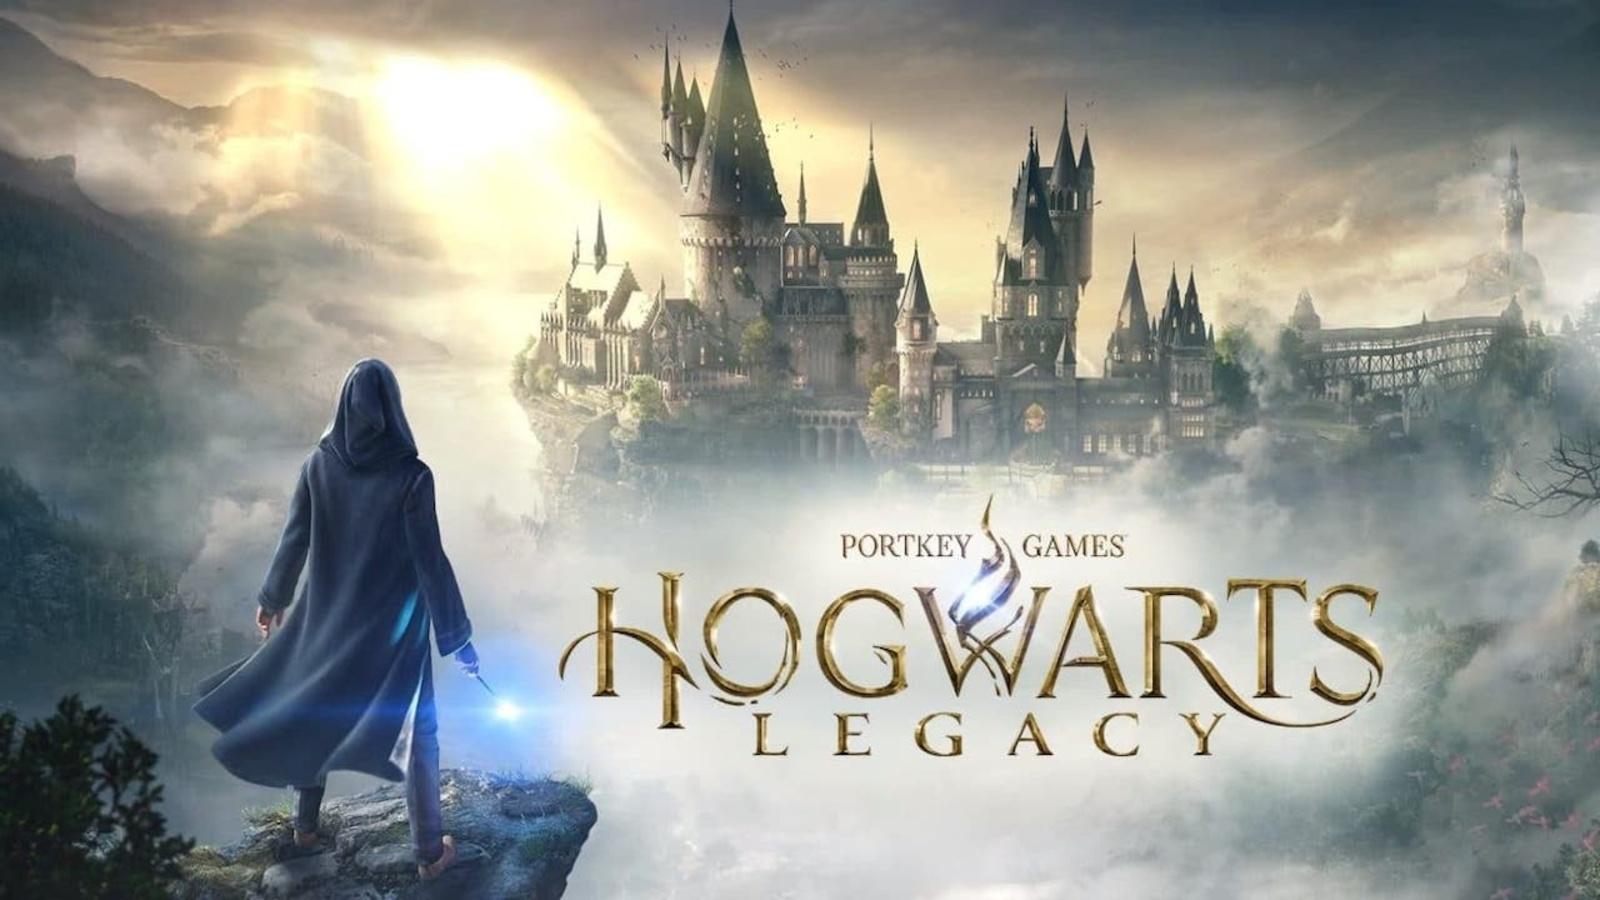 Harry Potter Hogwarts Legacy game